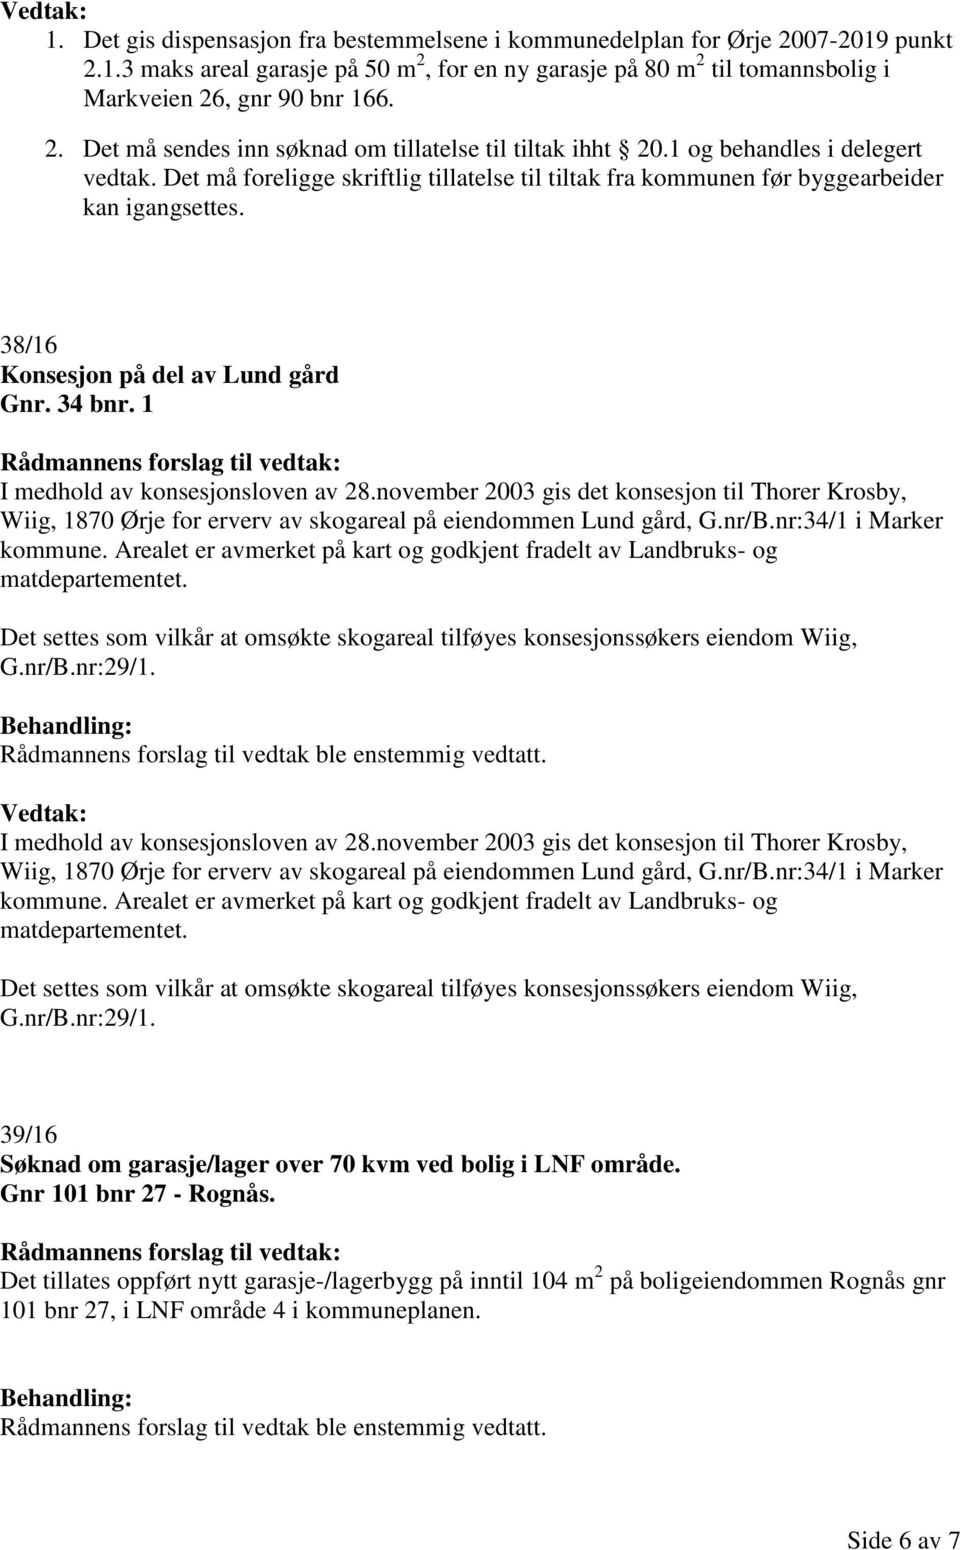 1 I medhold av konsesjonsloven av 28.november 2003 gis det konsesjon til Thorer Krosby, Wiig, 1870 Ørje for erverv av skogareal på eiendommen Lund gård, G.nr/B.nr:34/1 i Marker kommune.